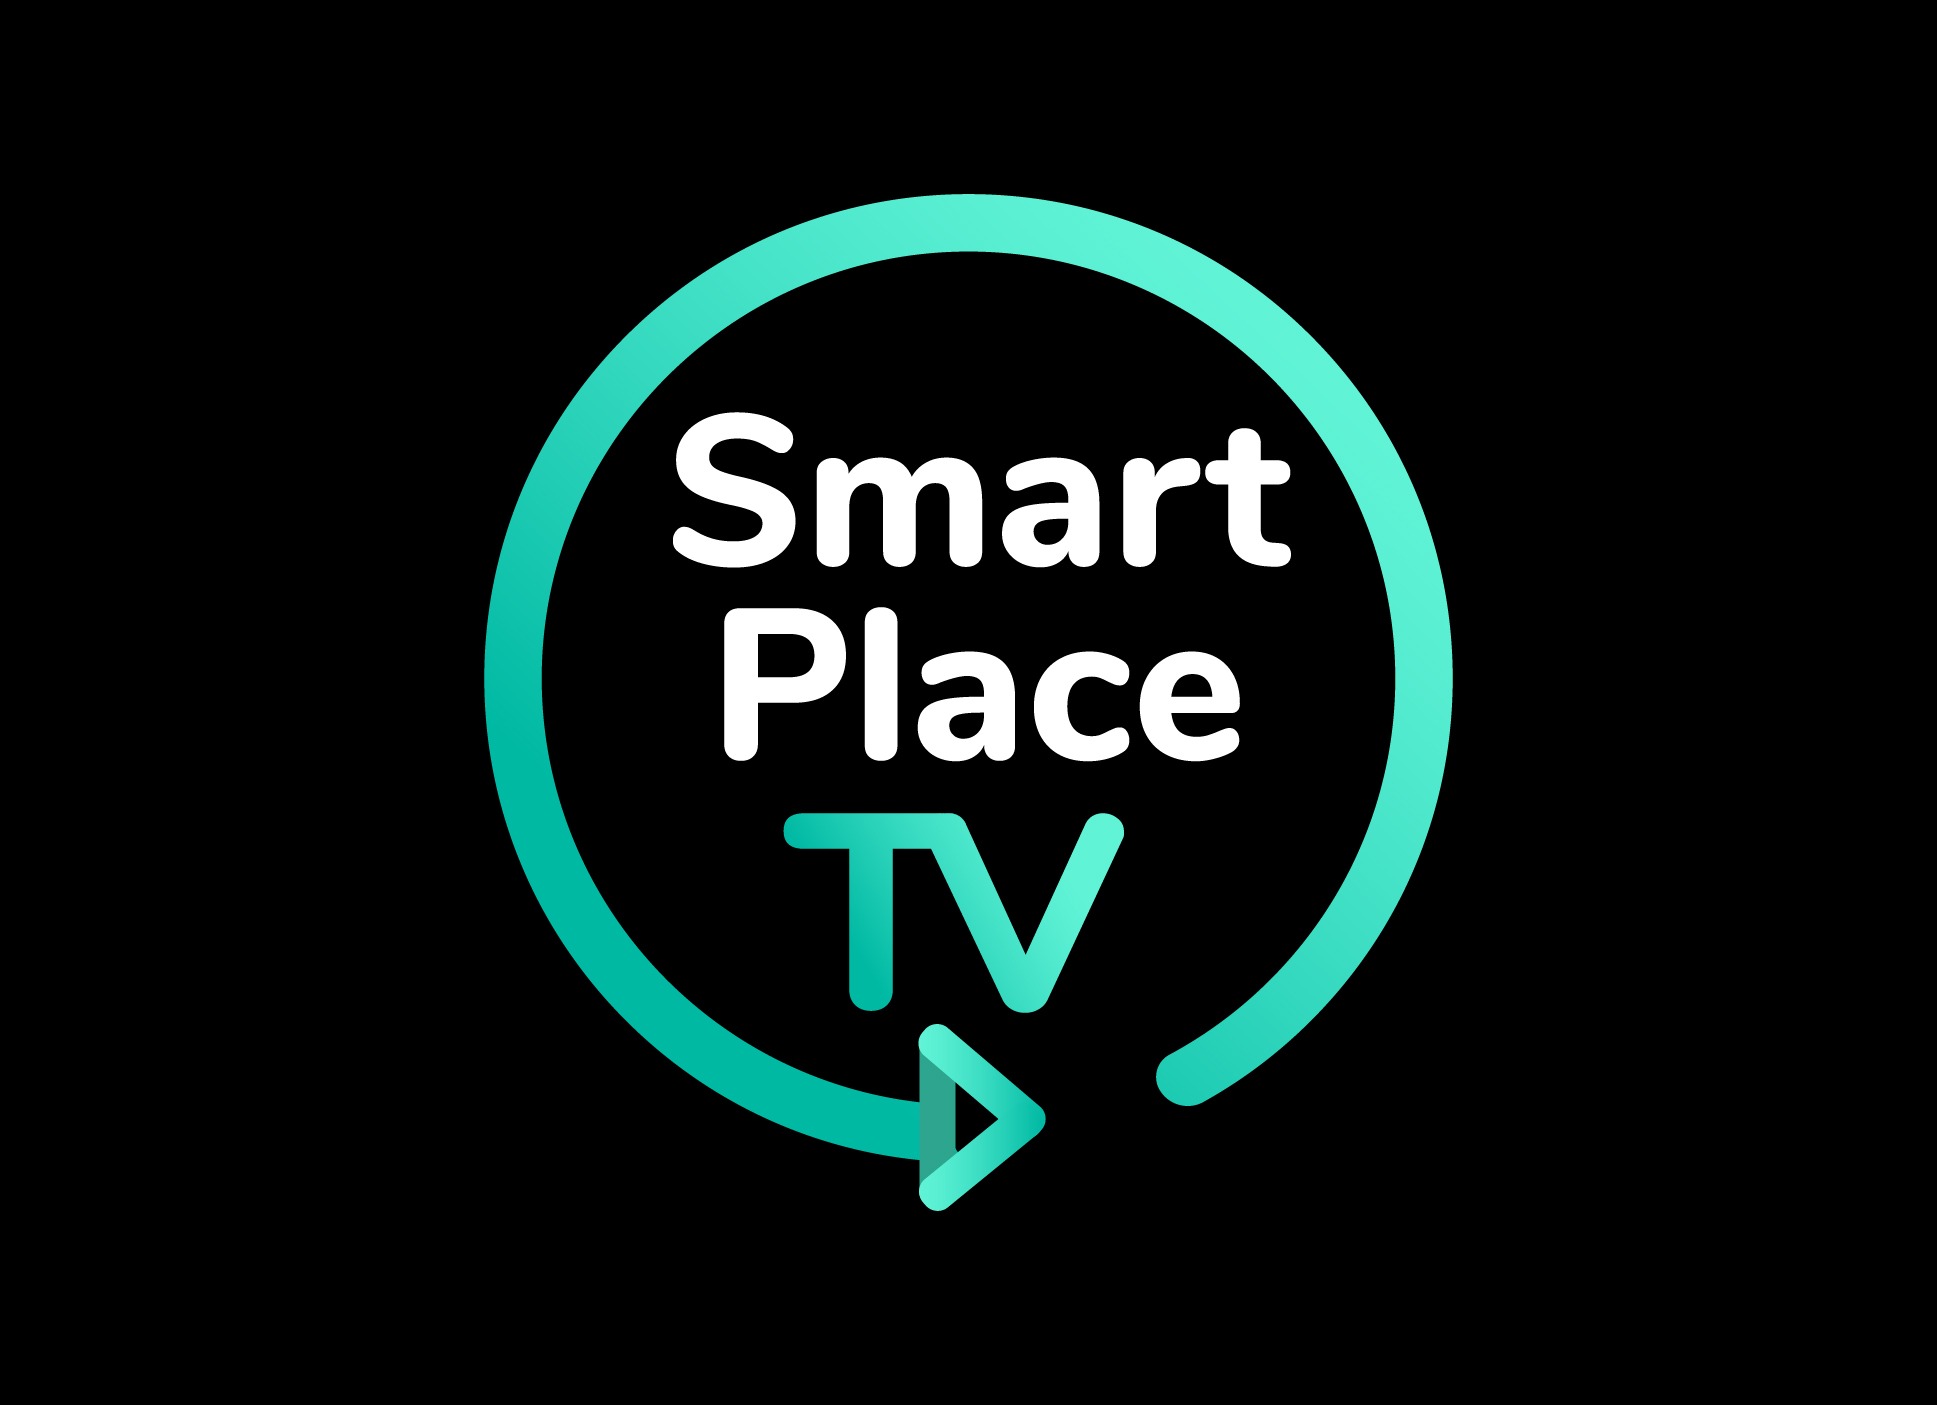 Smart Place versión 5